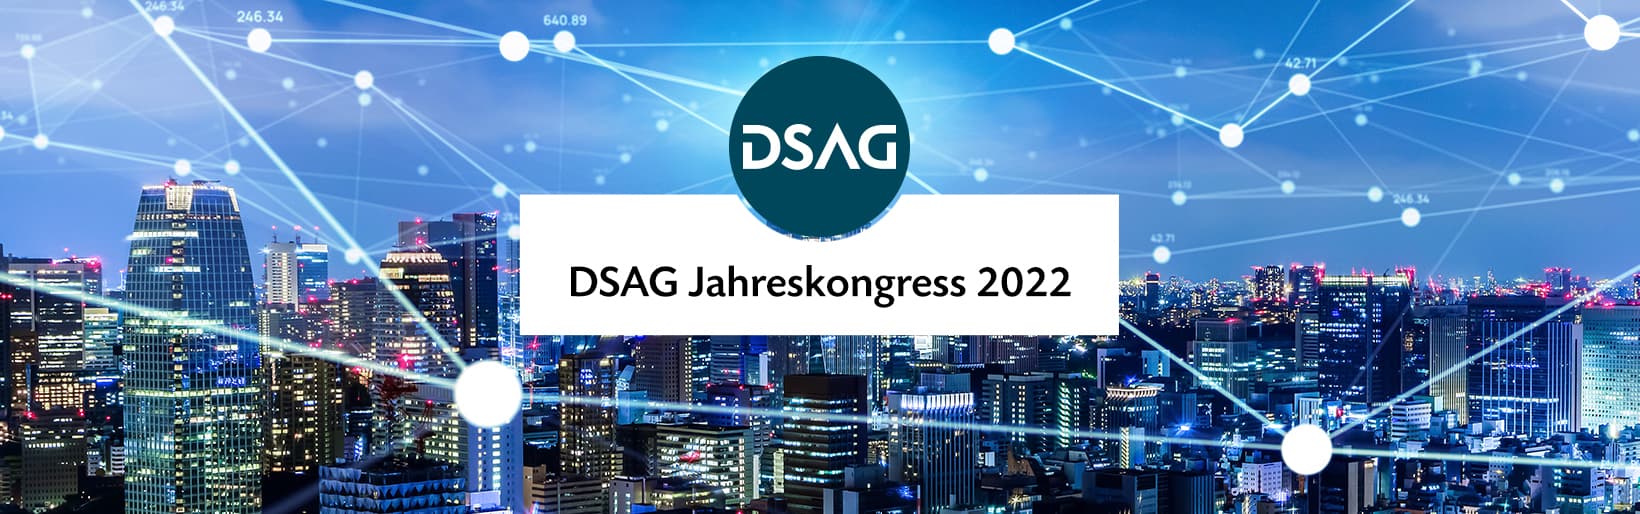 DSAG Jahreskongress 2022